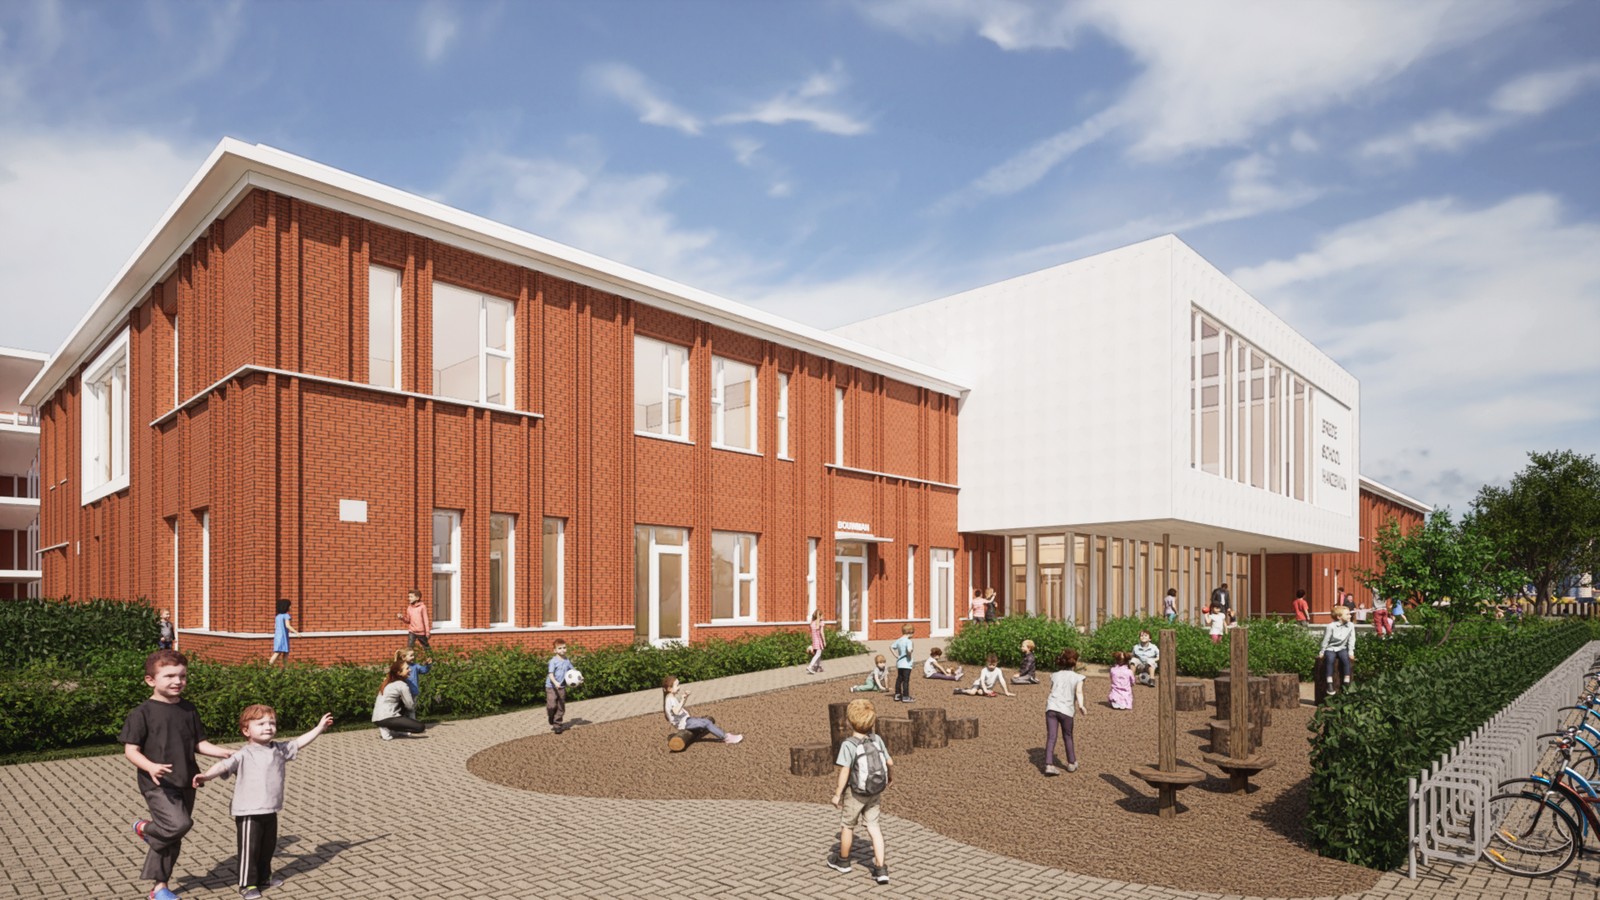 Meest circulaire schoolgebouw van Nederland staat binnenkort in Kampen